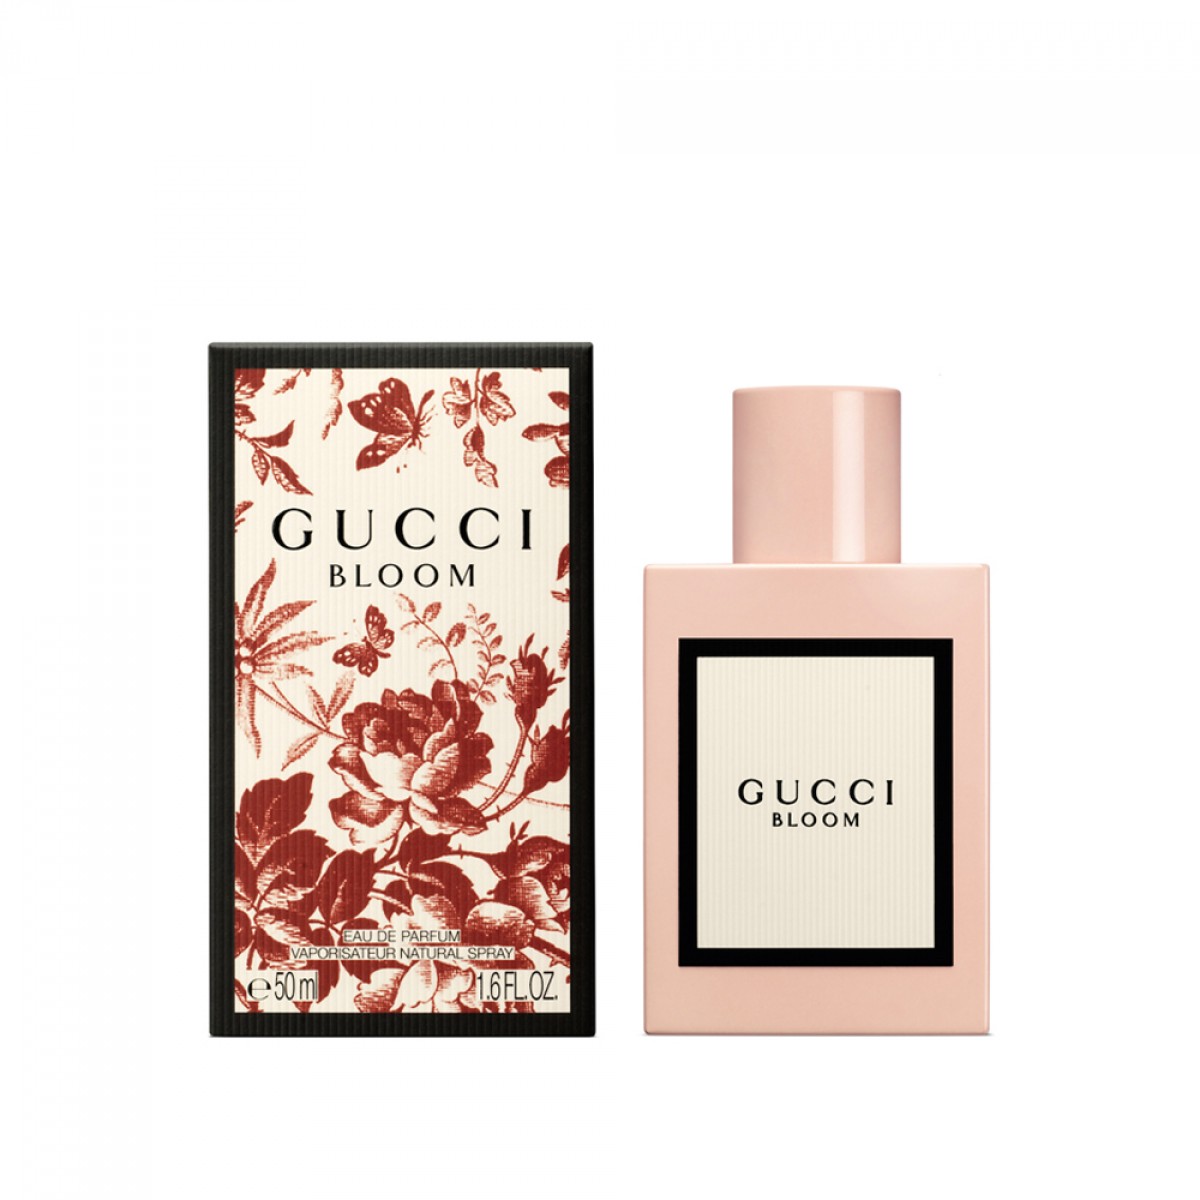 Gucci Bloom Aelia Duty Free 10% off on 